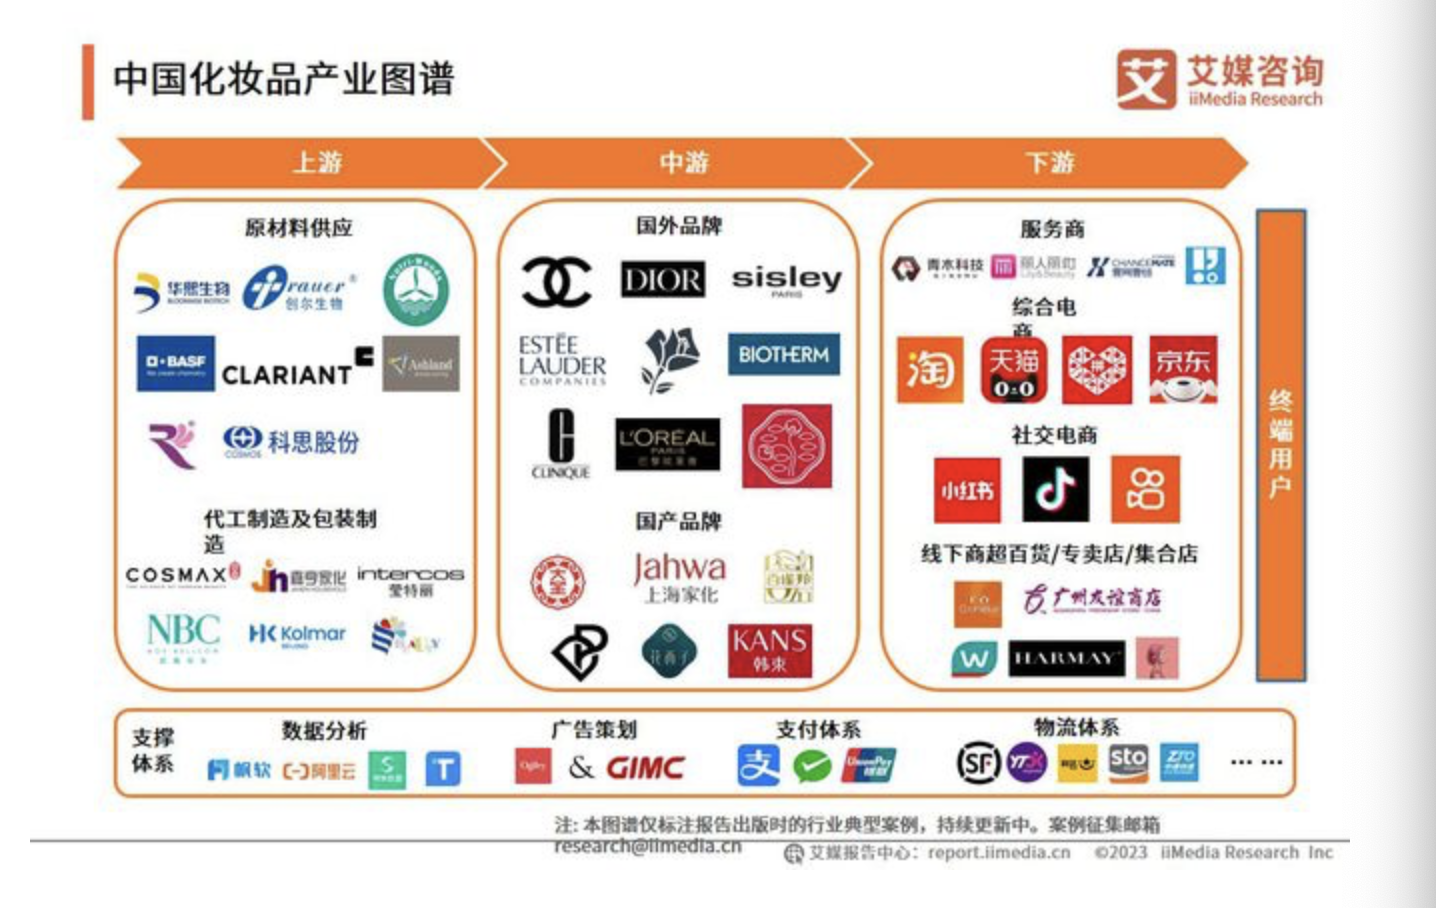 < 중국에 진출한 저가 브랜드부터 중고가 인기 브랜드, 전자상거래 플랫폼을 통계한 자료 - 출처: 'iiMedia Research(艾媒咨询)' >